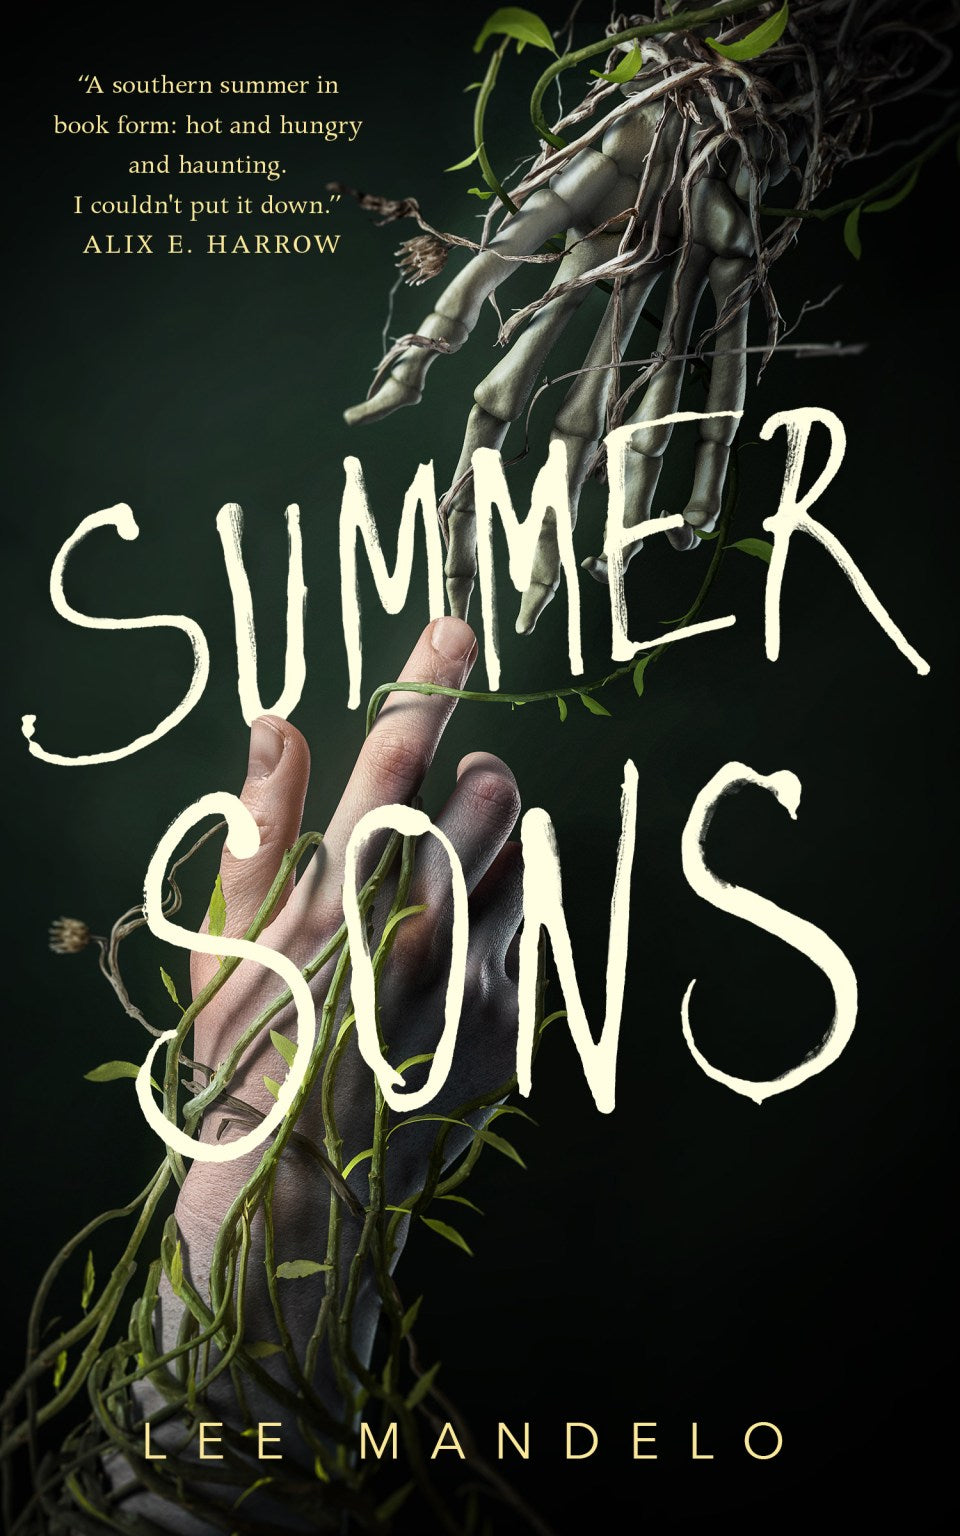 Summer Sons